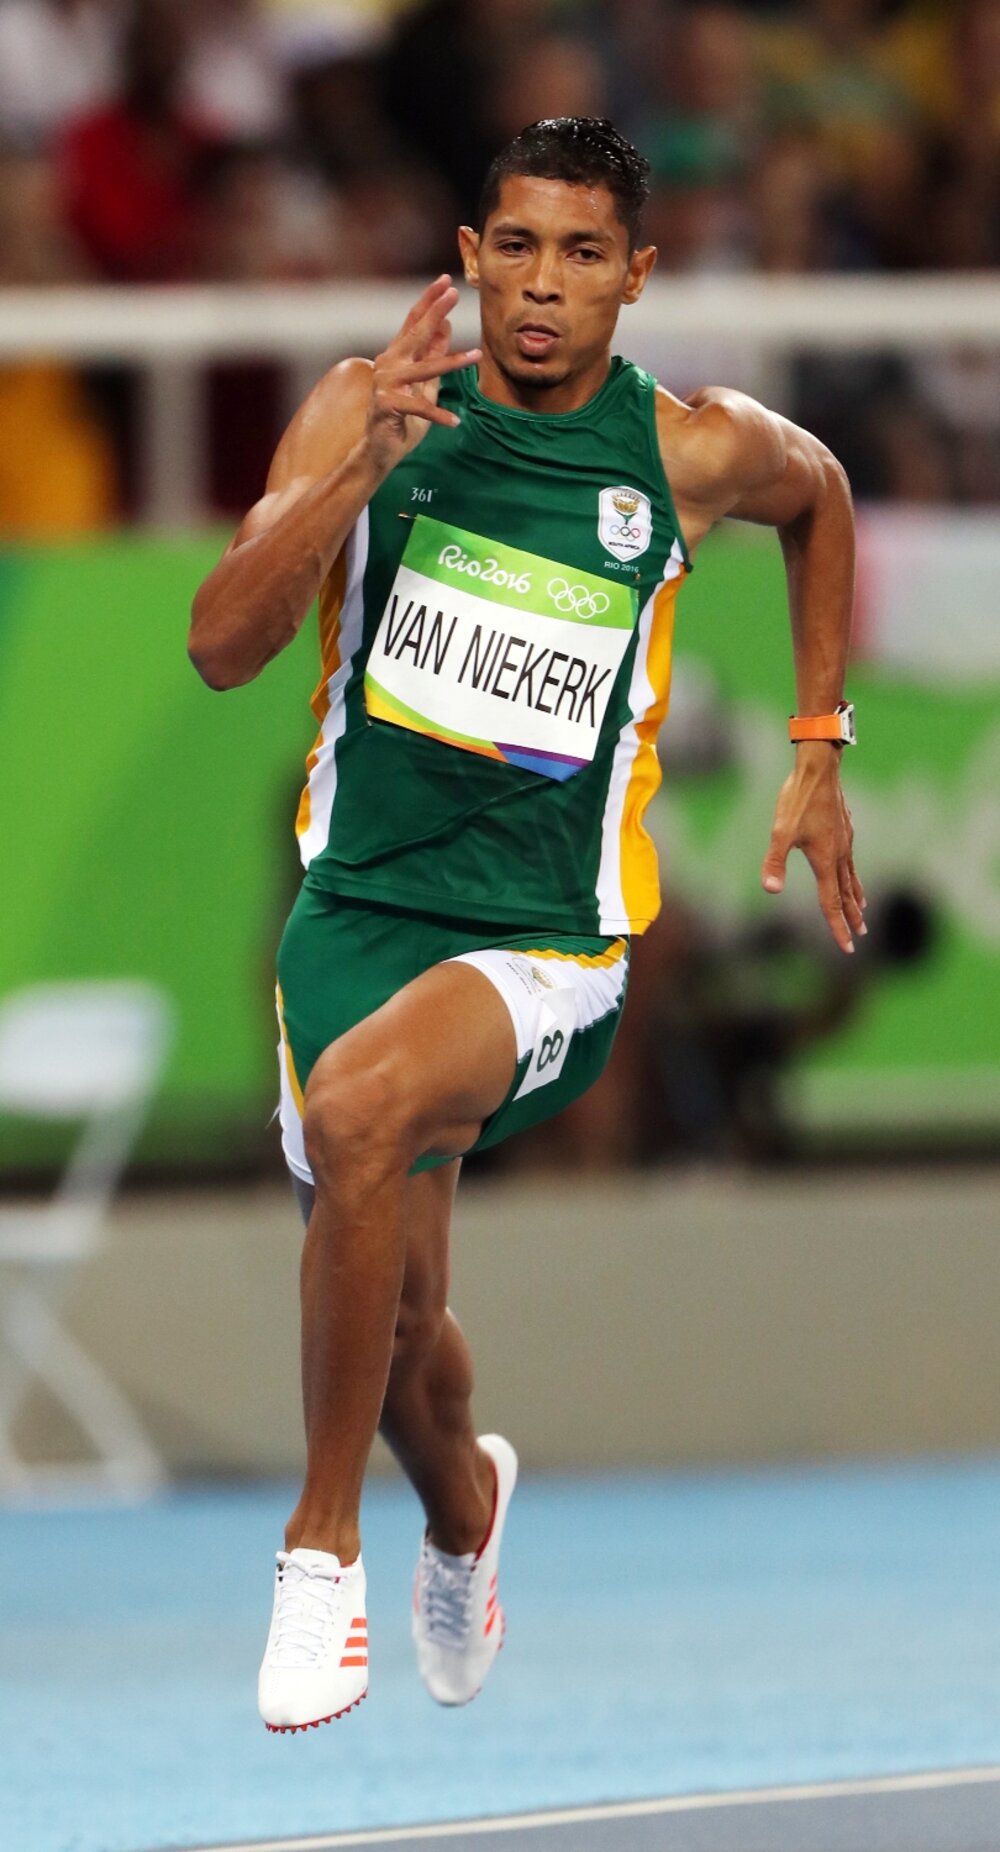 43.03: Van Niekerk světovým rekordmanem